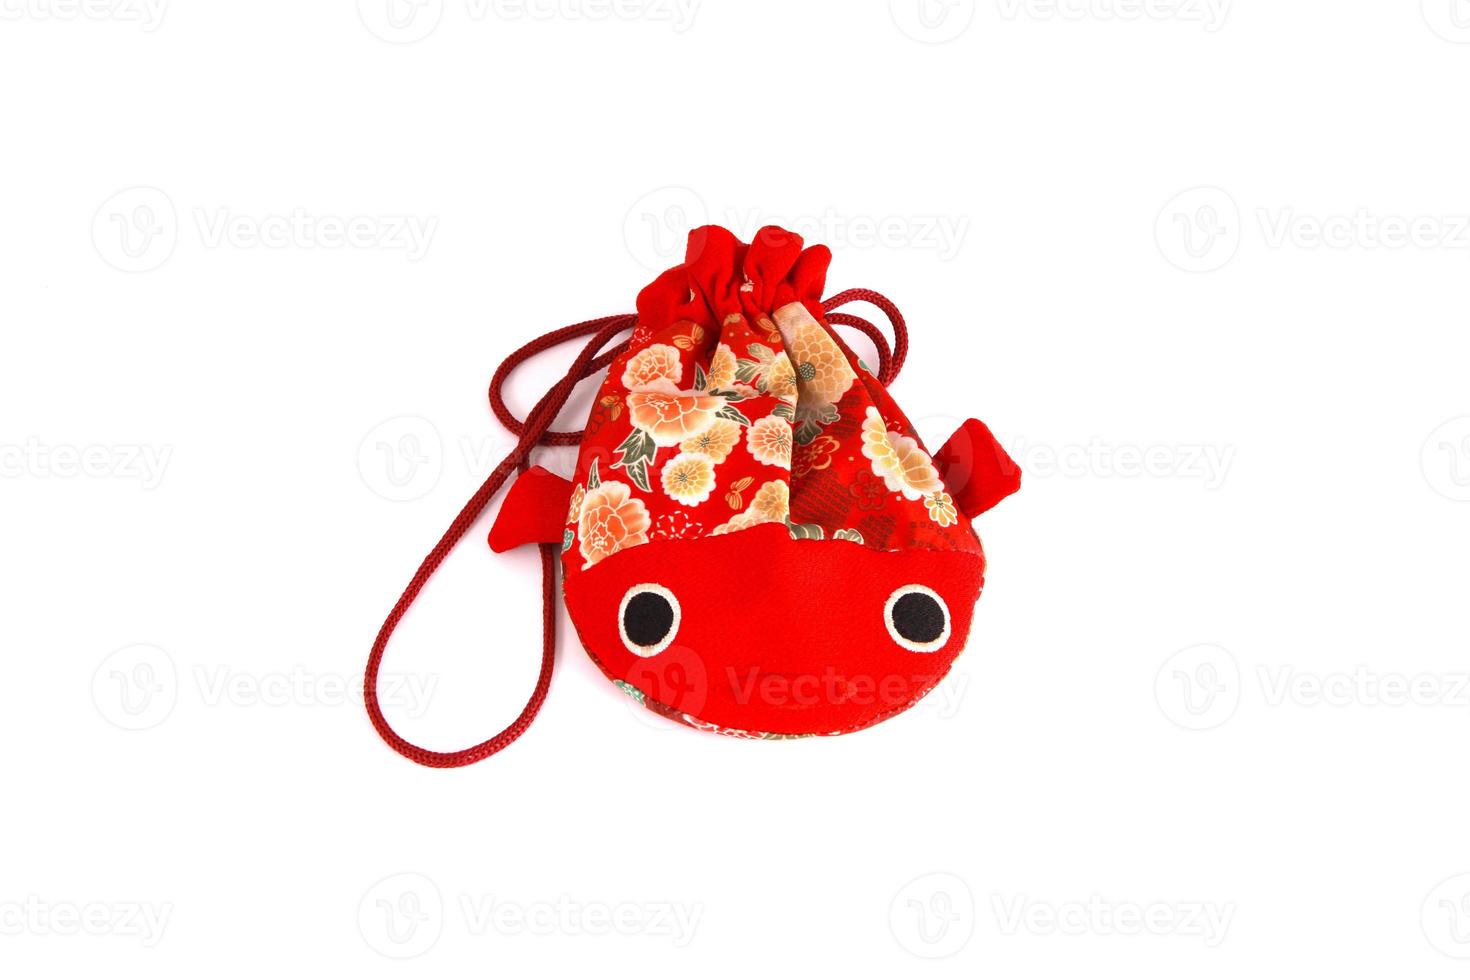 saco de peixe vermelho isolado no branco foto